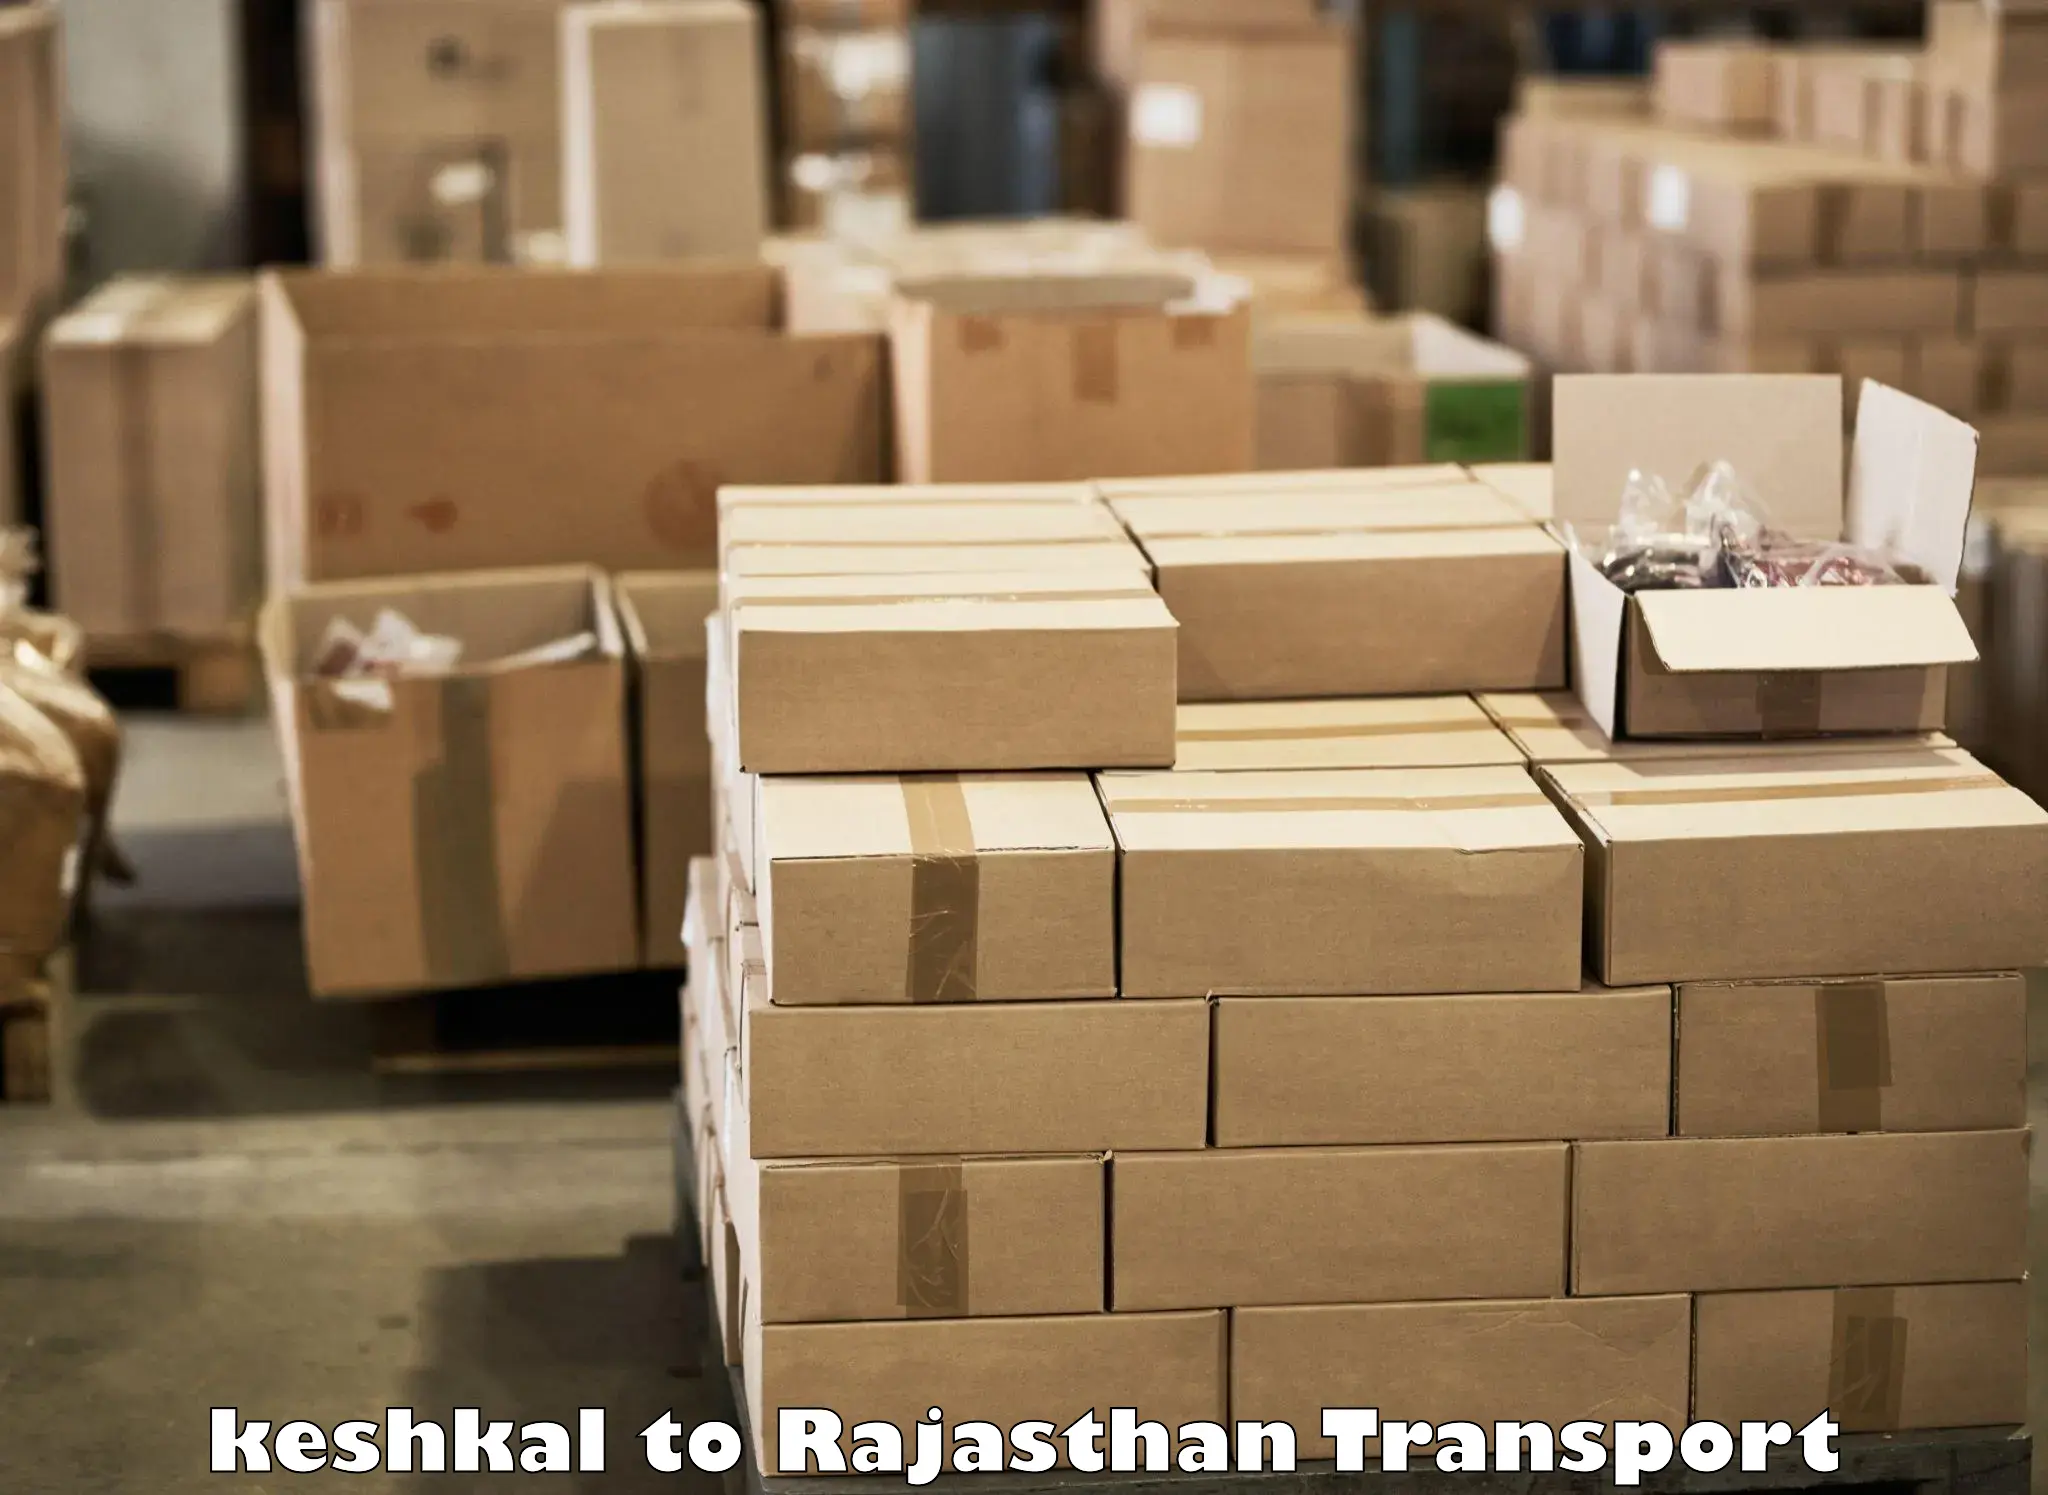 Furniture transport service keshkal to Khetri Nagar